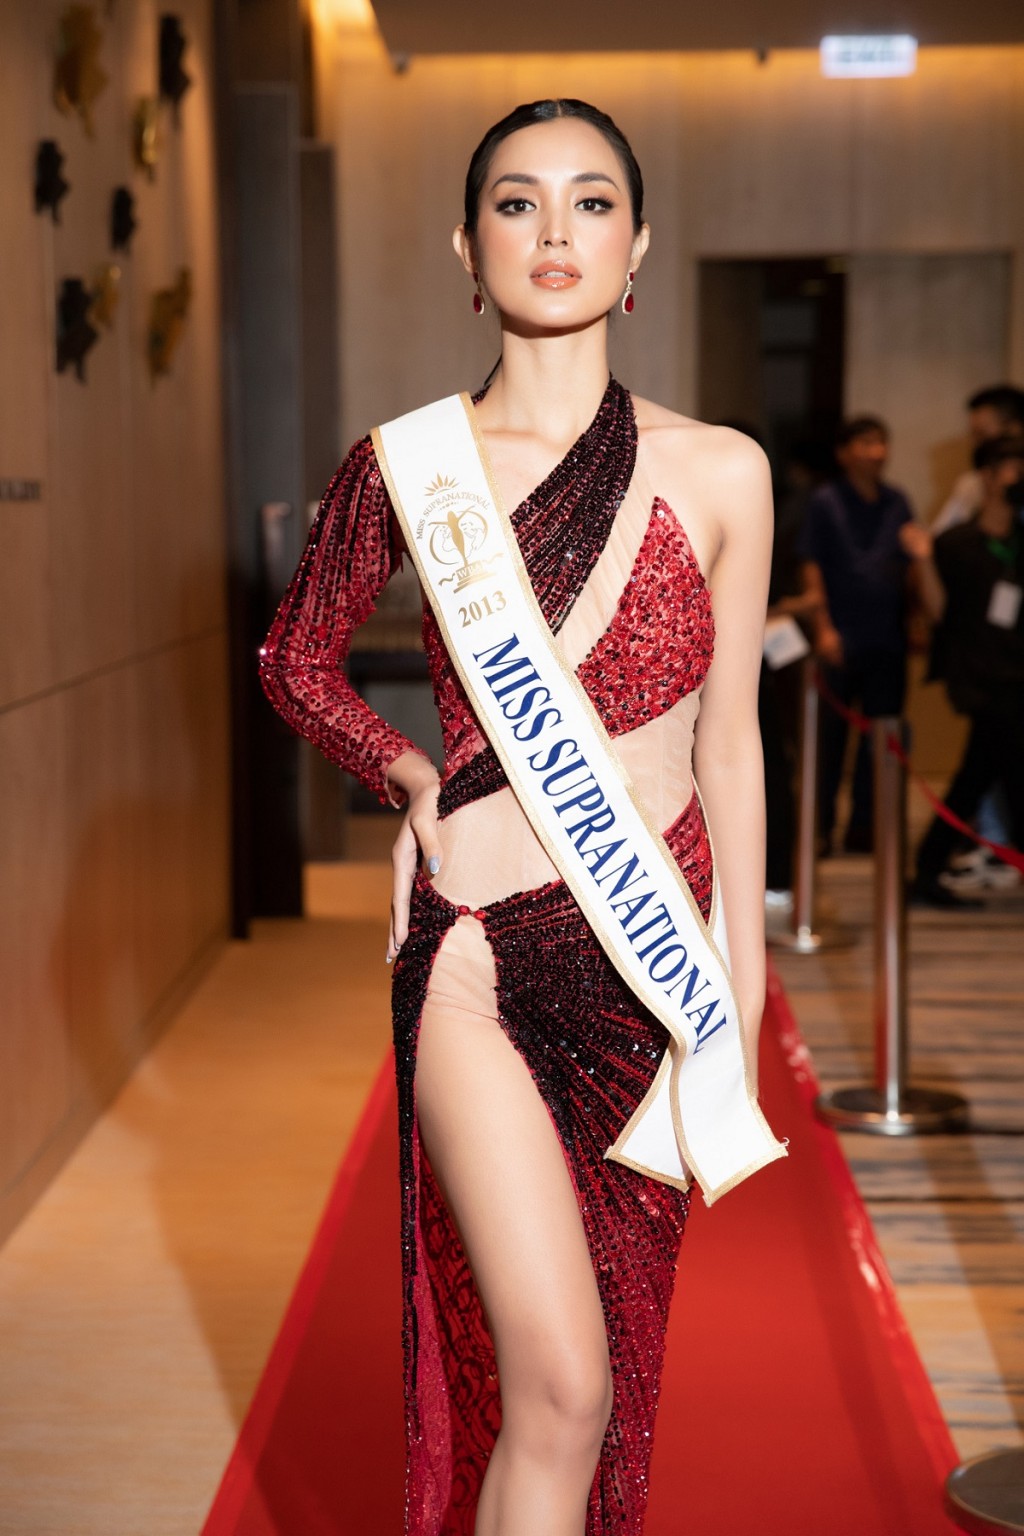 Hoa hậu Siêu quốc gia 2013 đến Việt Nam làm giám khảo Miss Sea Island Vietnam 2022